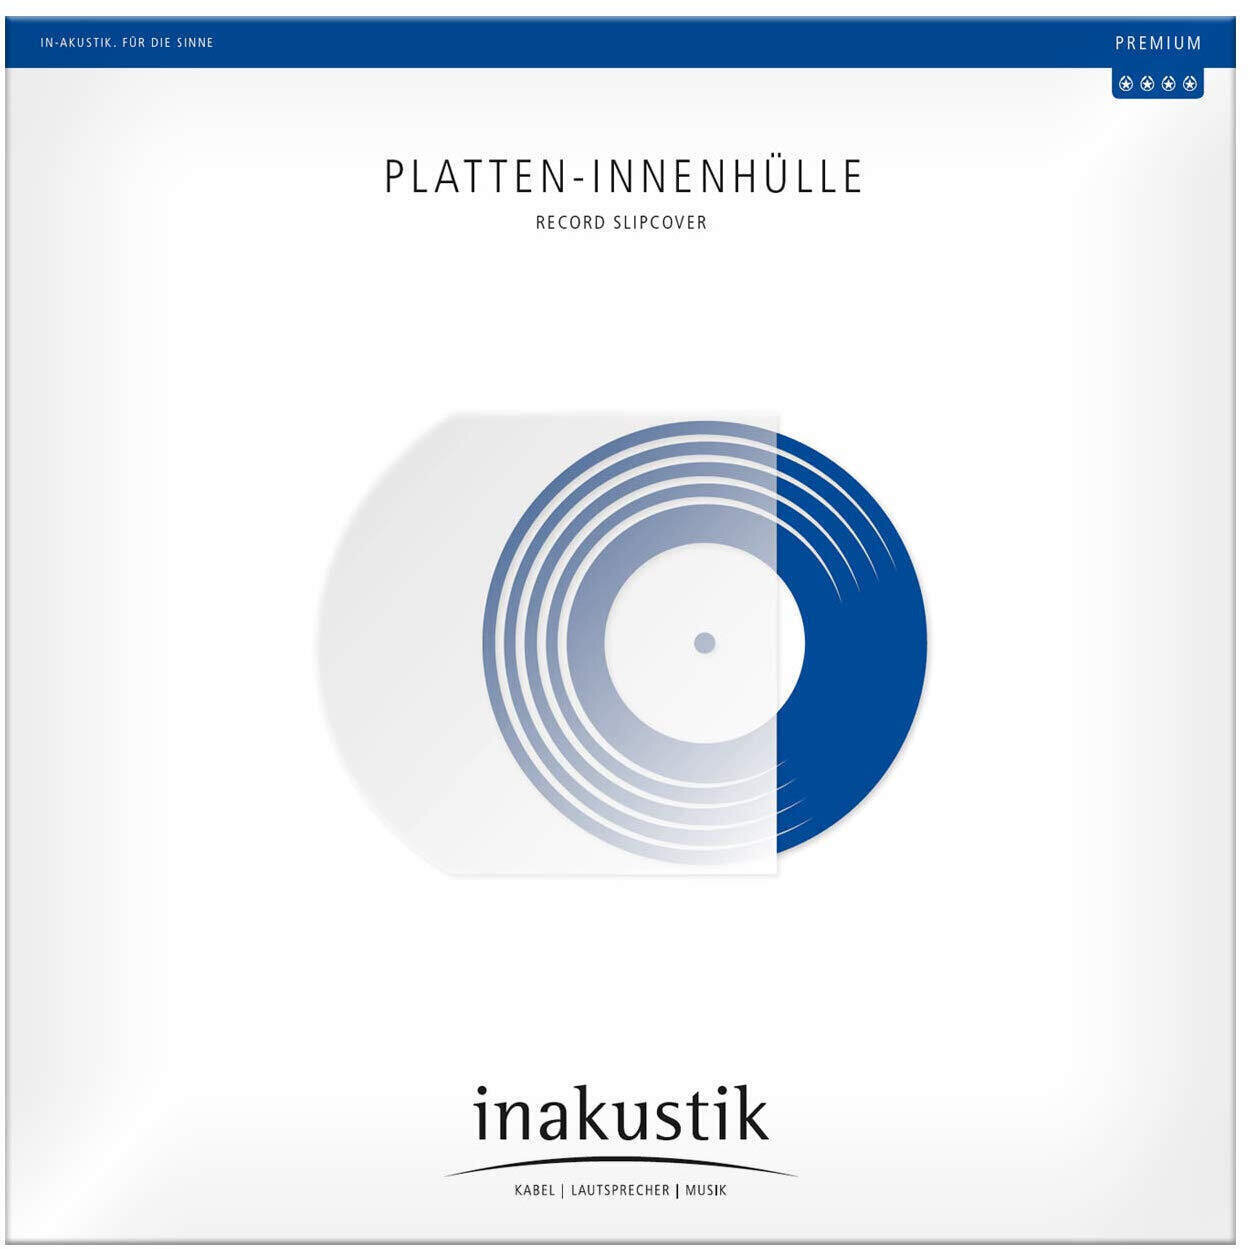 Geantă/husă pentru înregistrări LP Inakustik Record Slipcover Învelitoare Geantă/husă pentru înregistrări LP